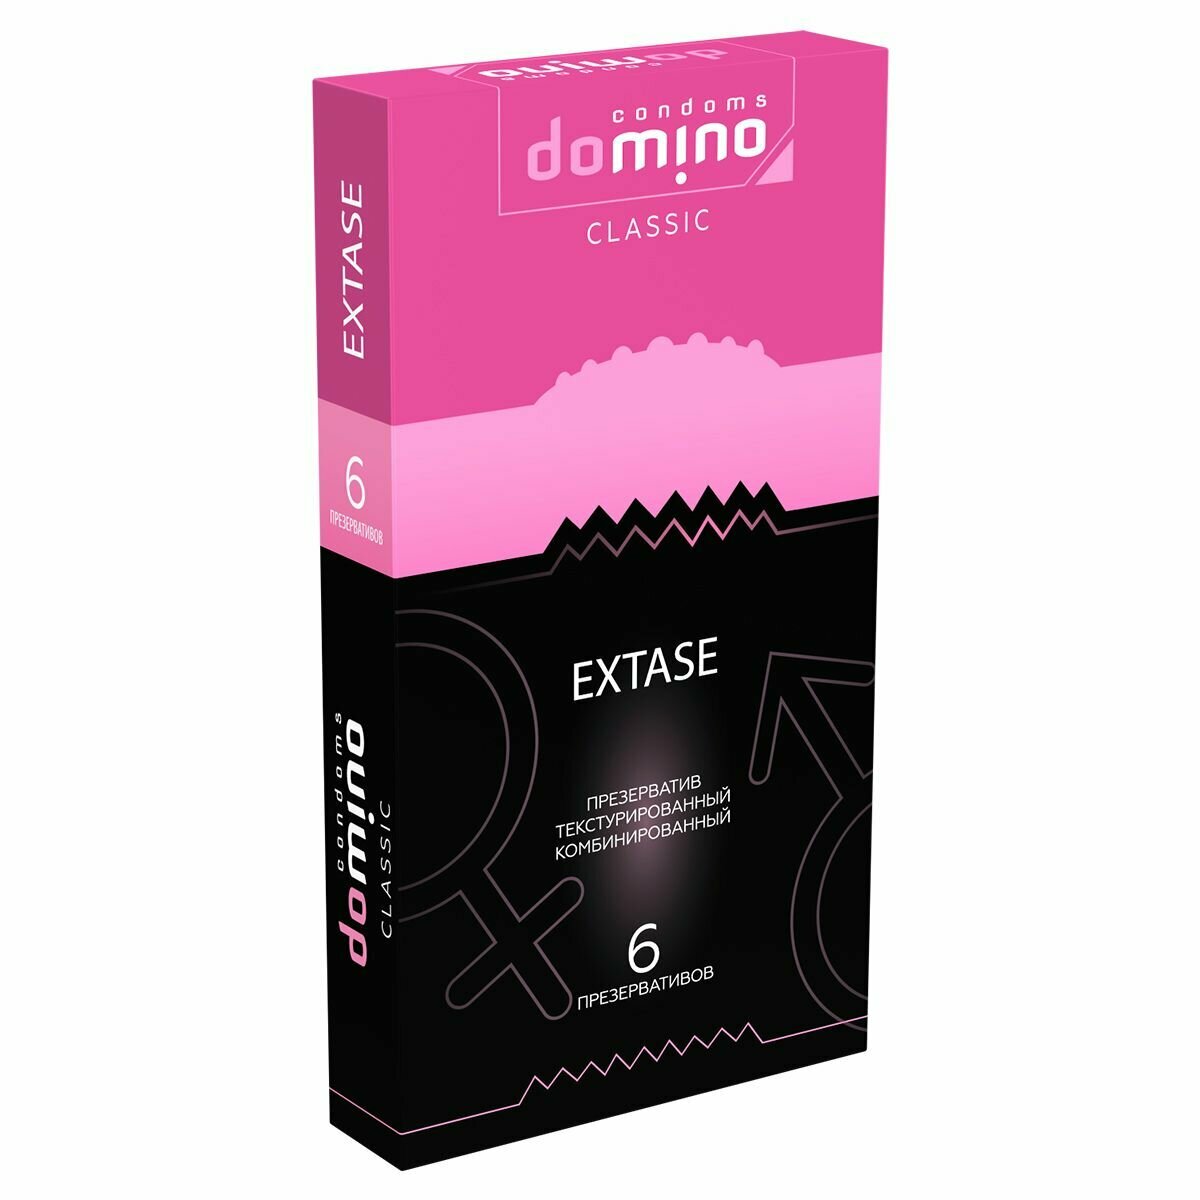 Презервативы Domino Classic Extase, 6 шт.